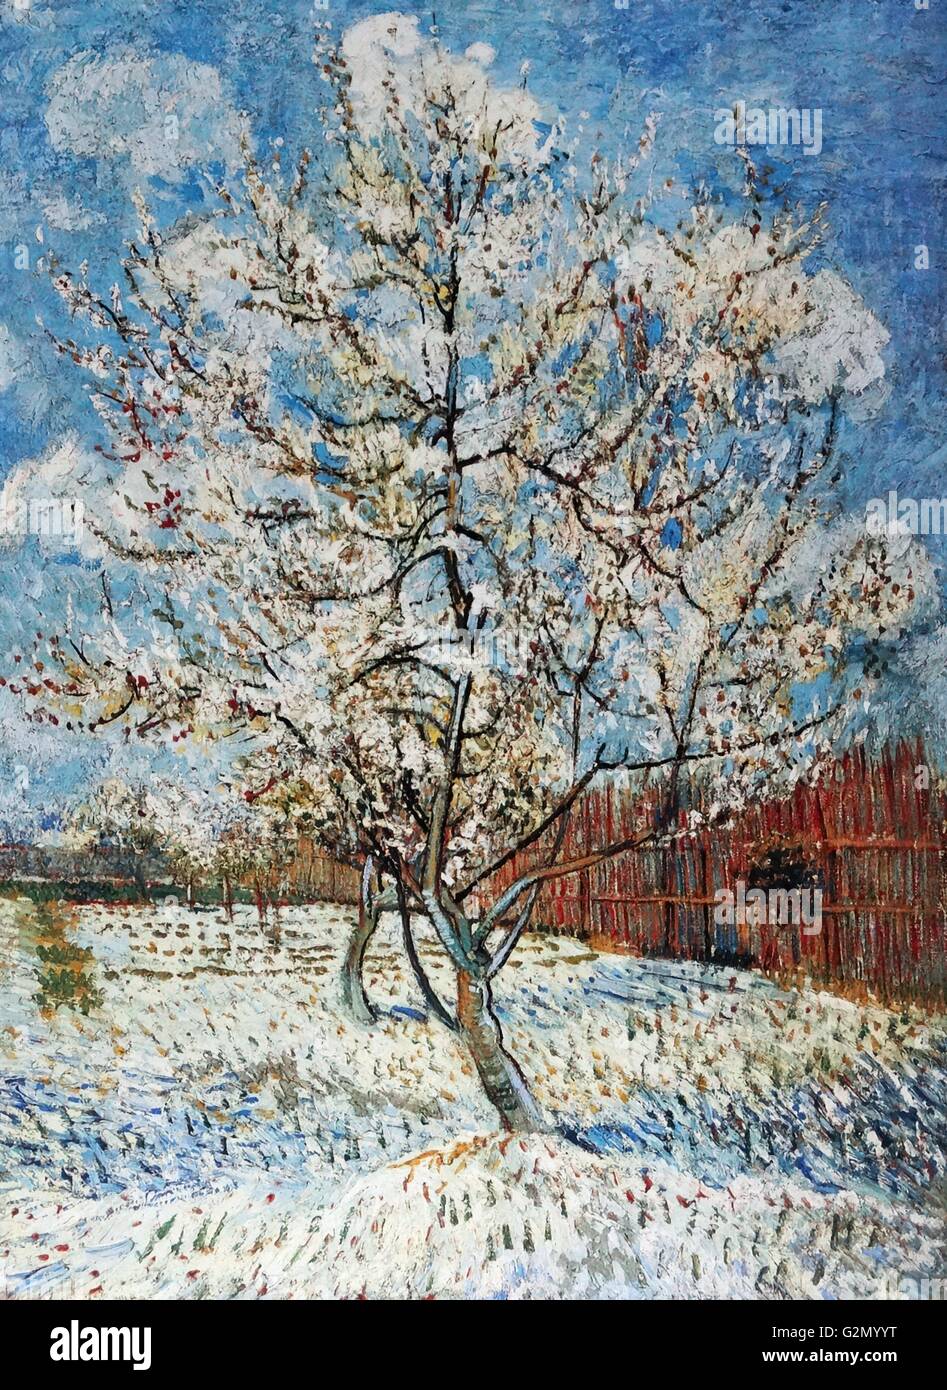 Pintada por el famoso artista holandés Vincent Van Gogh (30 de marzo de 1853 - 29 de julio de 1890), el trabajo titulado 'el florecimiento de durazno". Terminado en 1888. Foto de stock